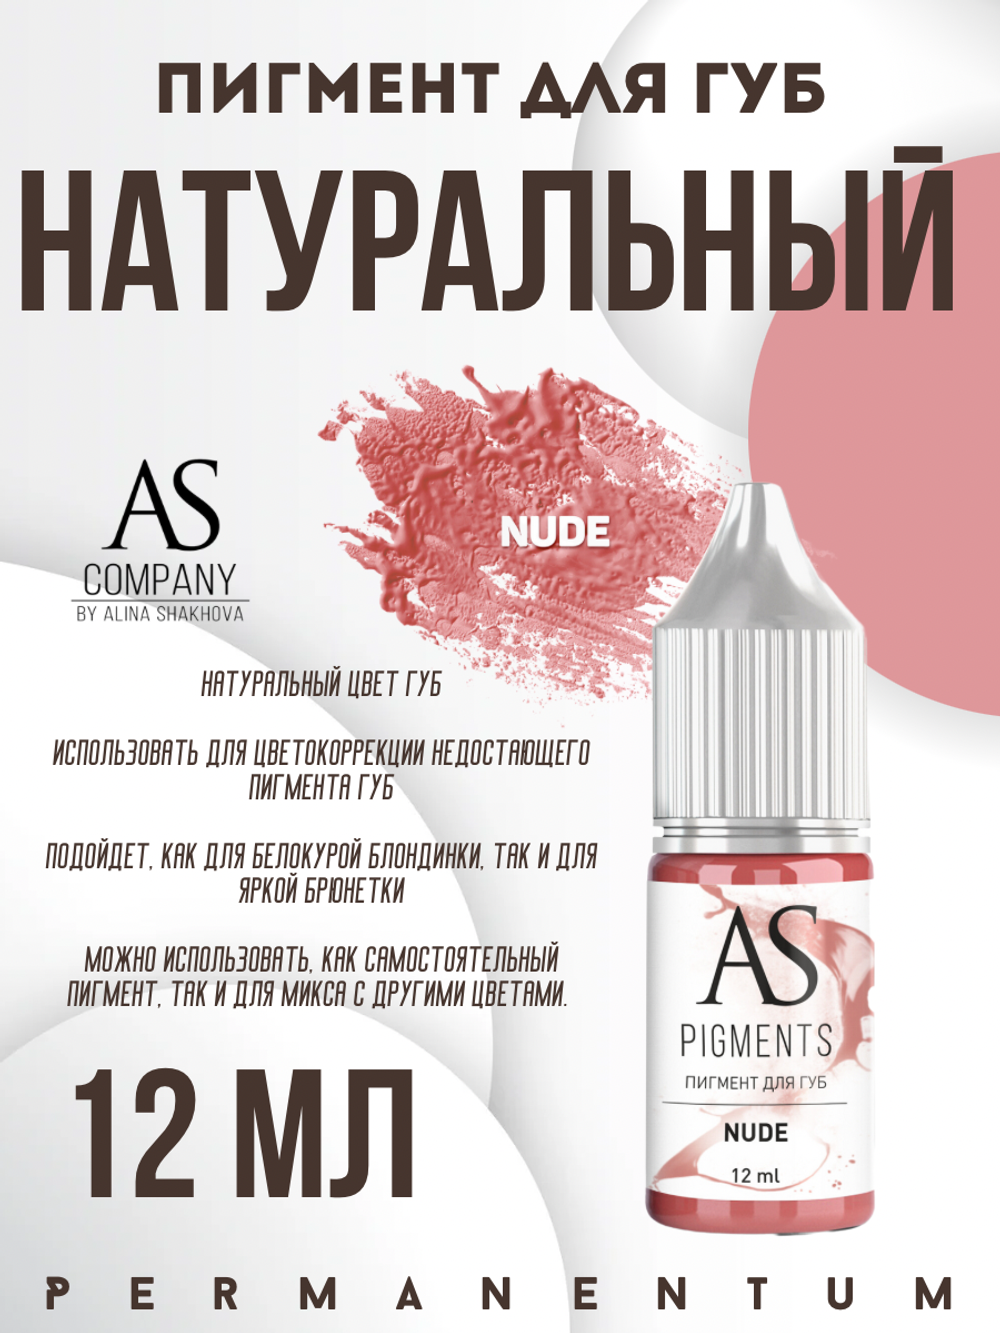 Пигмент для губ Nude (Натуральный) от Алины Шаховой